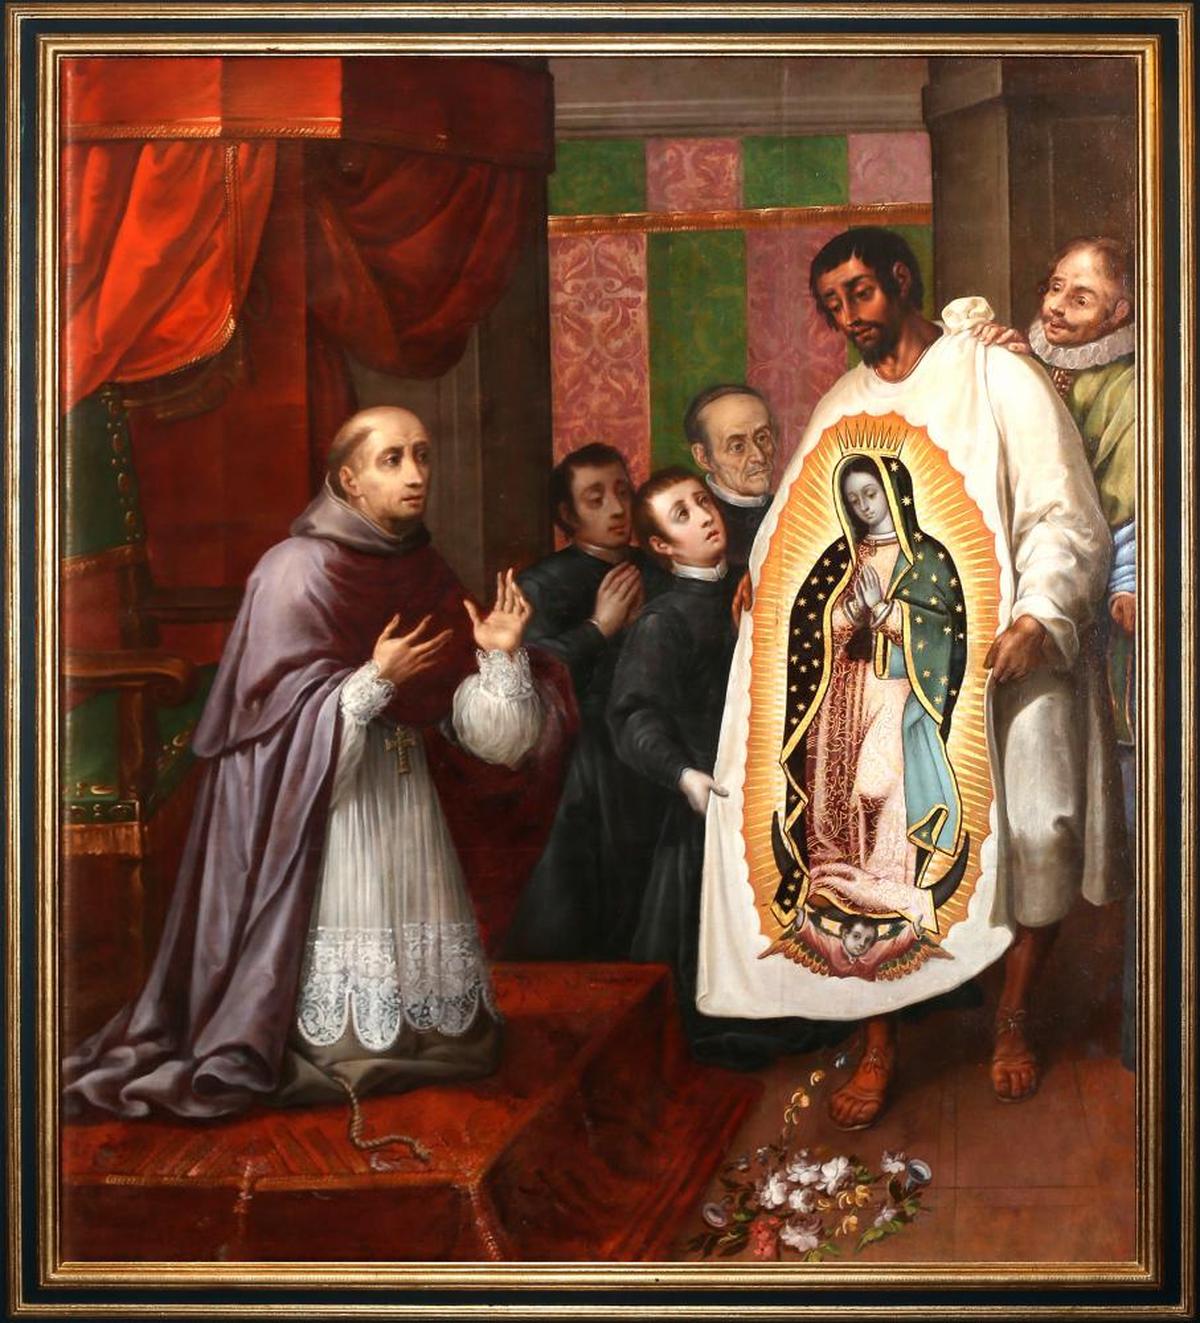 El cuadro muestra uno de los episodios relacionados con las cuatro apariciones de la Virgen de Guadalupe al campesino Juan Diego